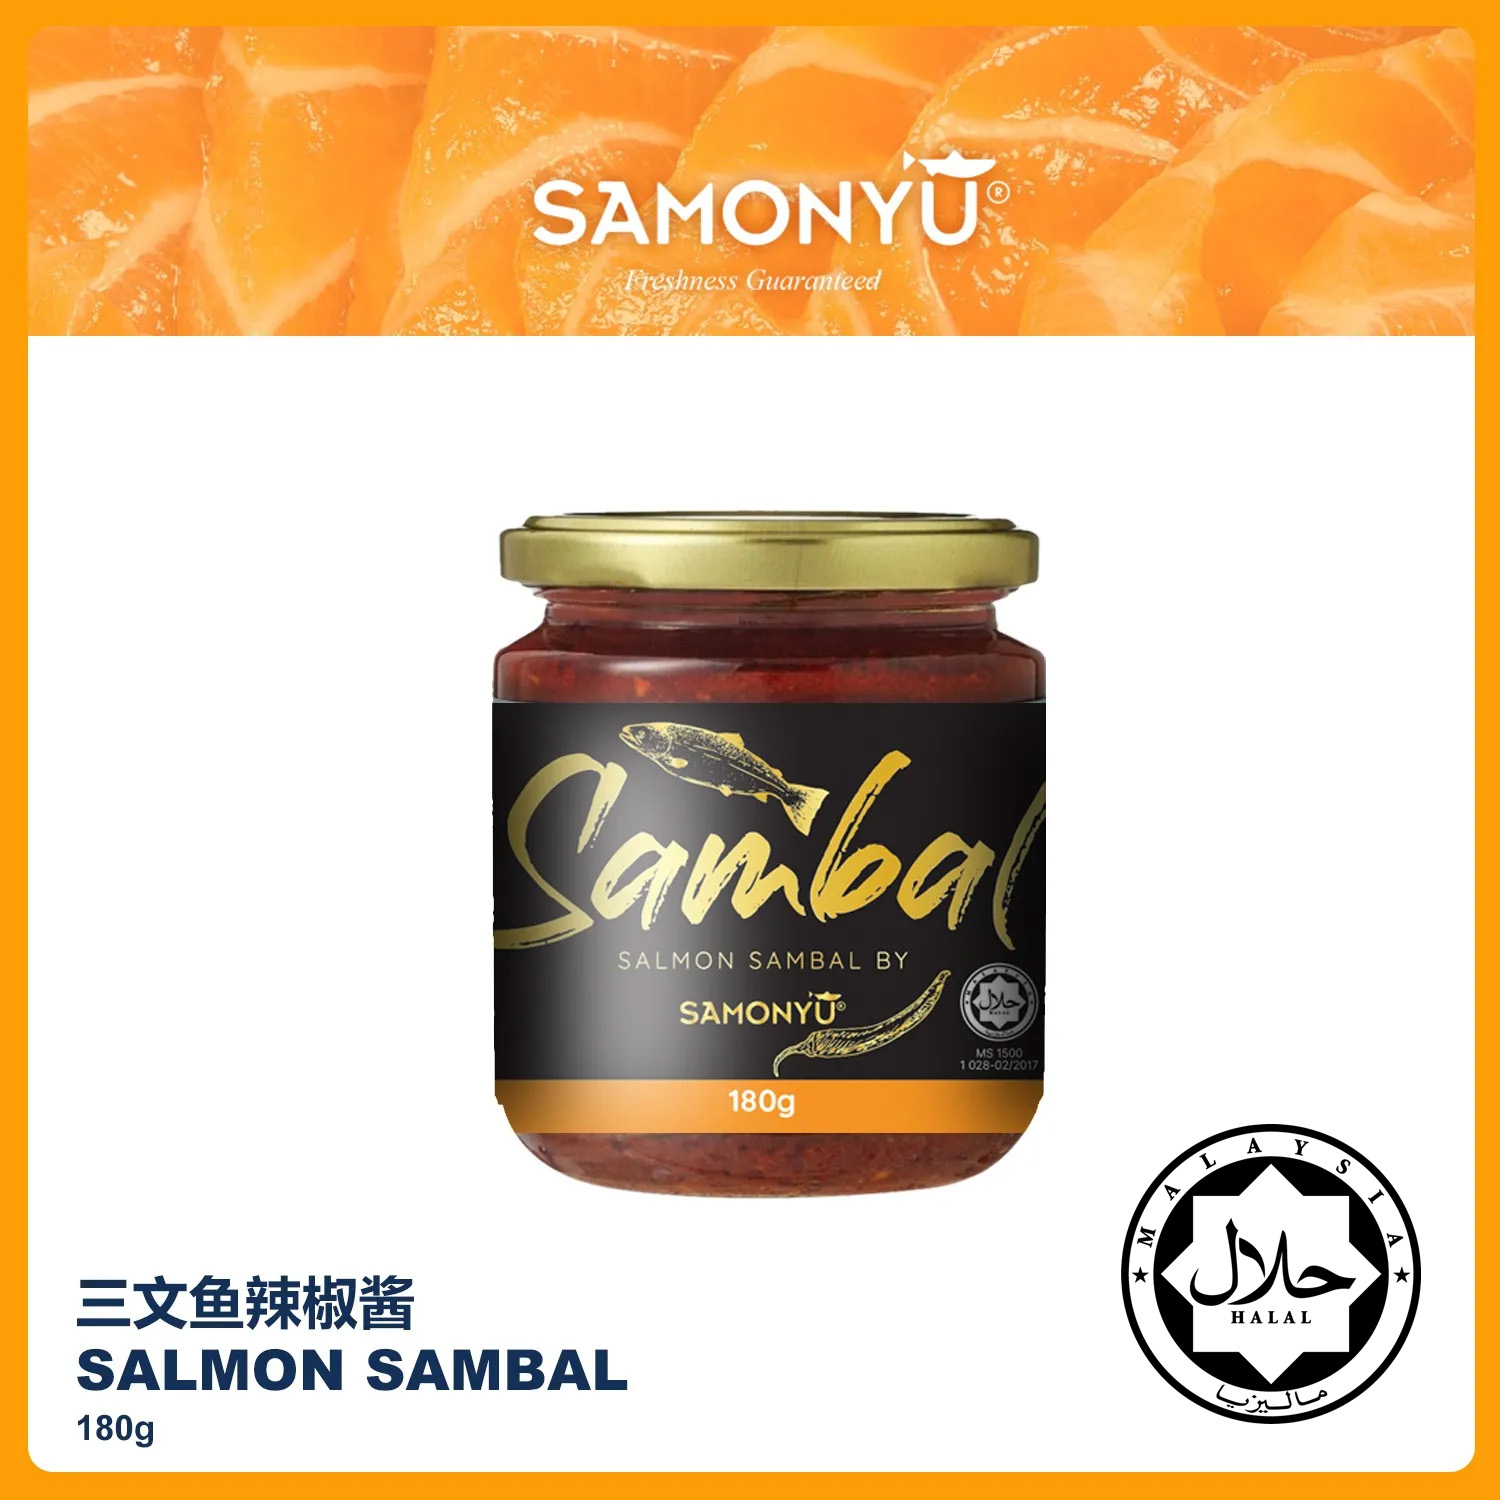 【SAMONYU】SALMON SAMBAL 三文鱼辣椒酱 180g (Net Weight)